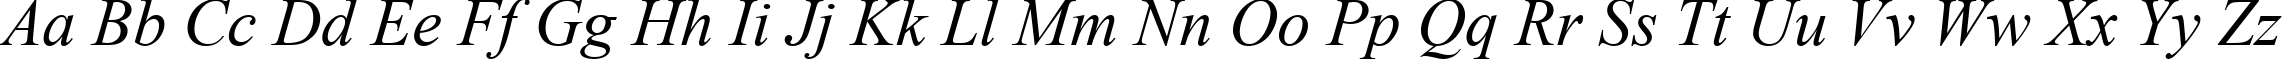 Пример написания английского алфавита шрифтом Times New Roman Italic